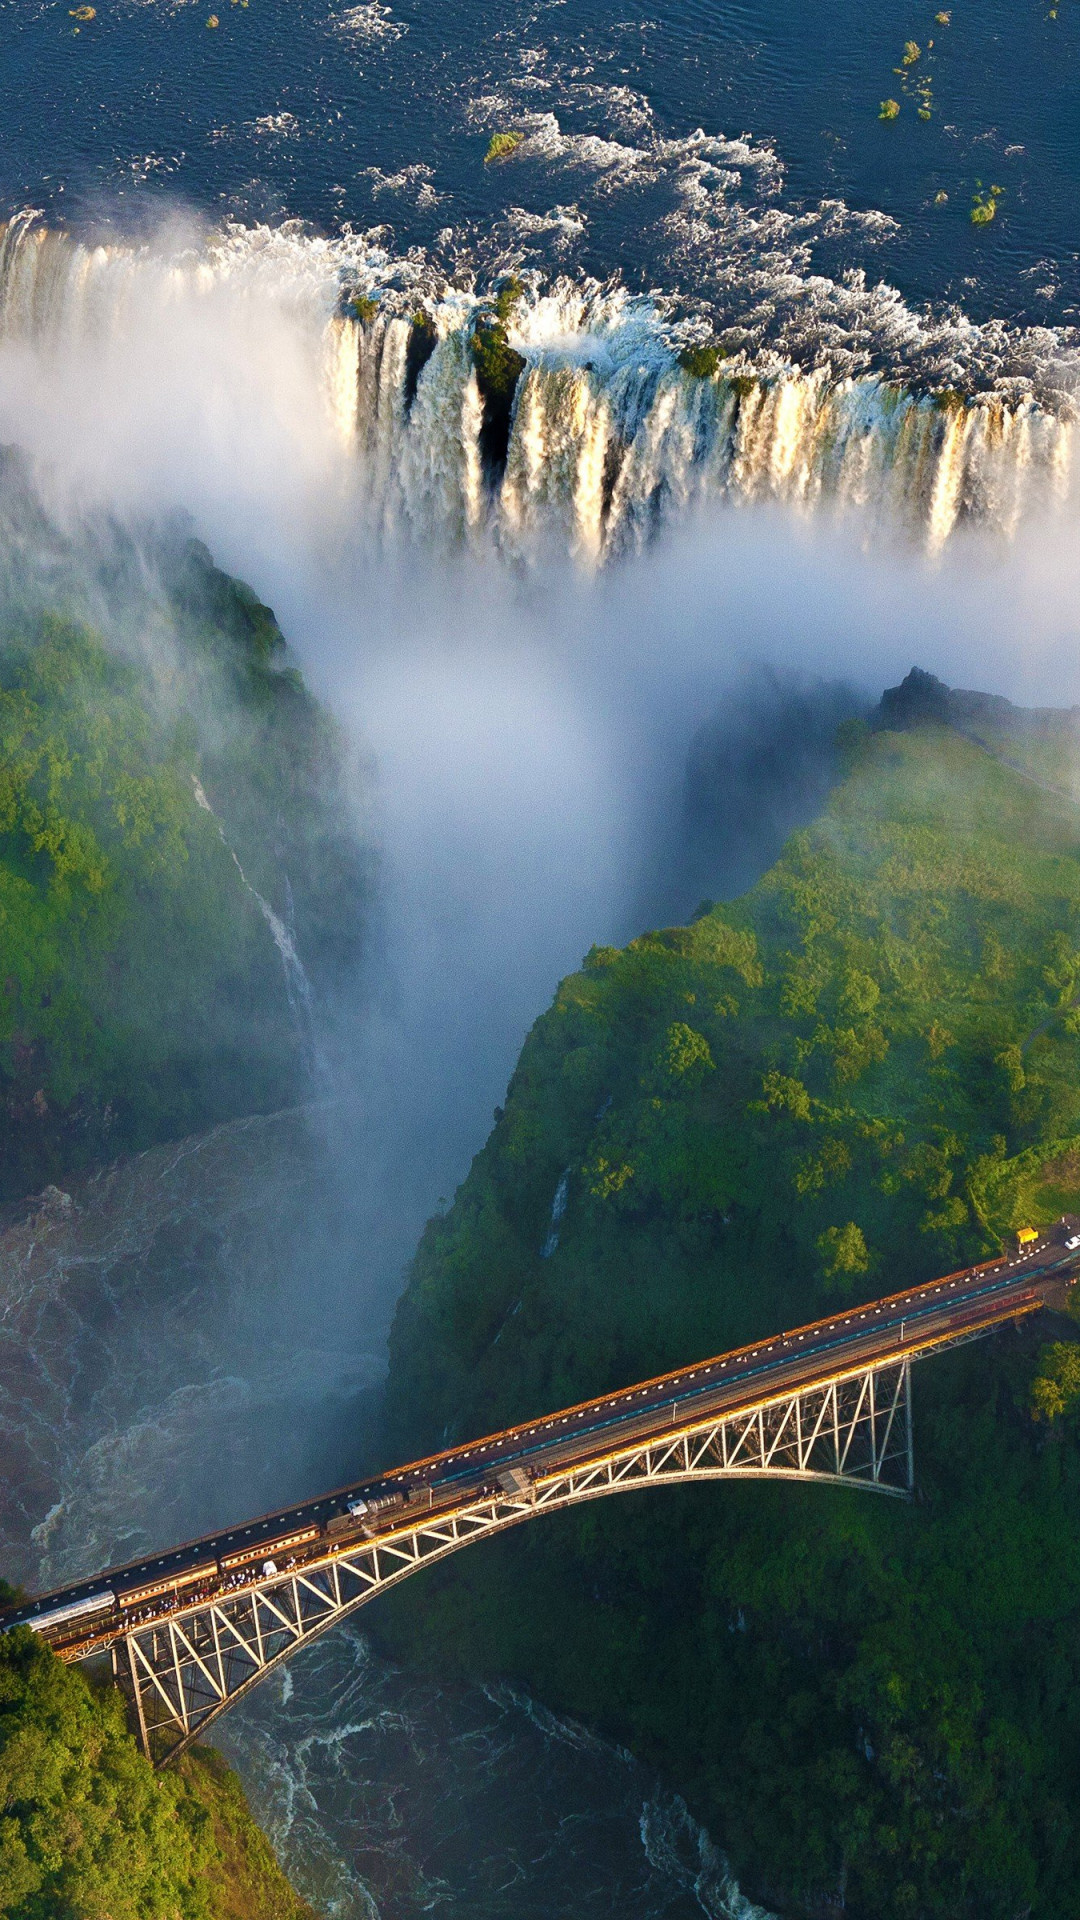 Zambia travels, Zambia waterfall, Nature's beauty, Refreshing scenery, 1080x1920 Full HD Handy